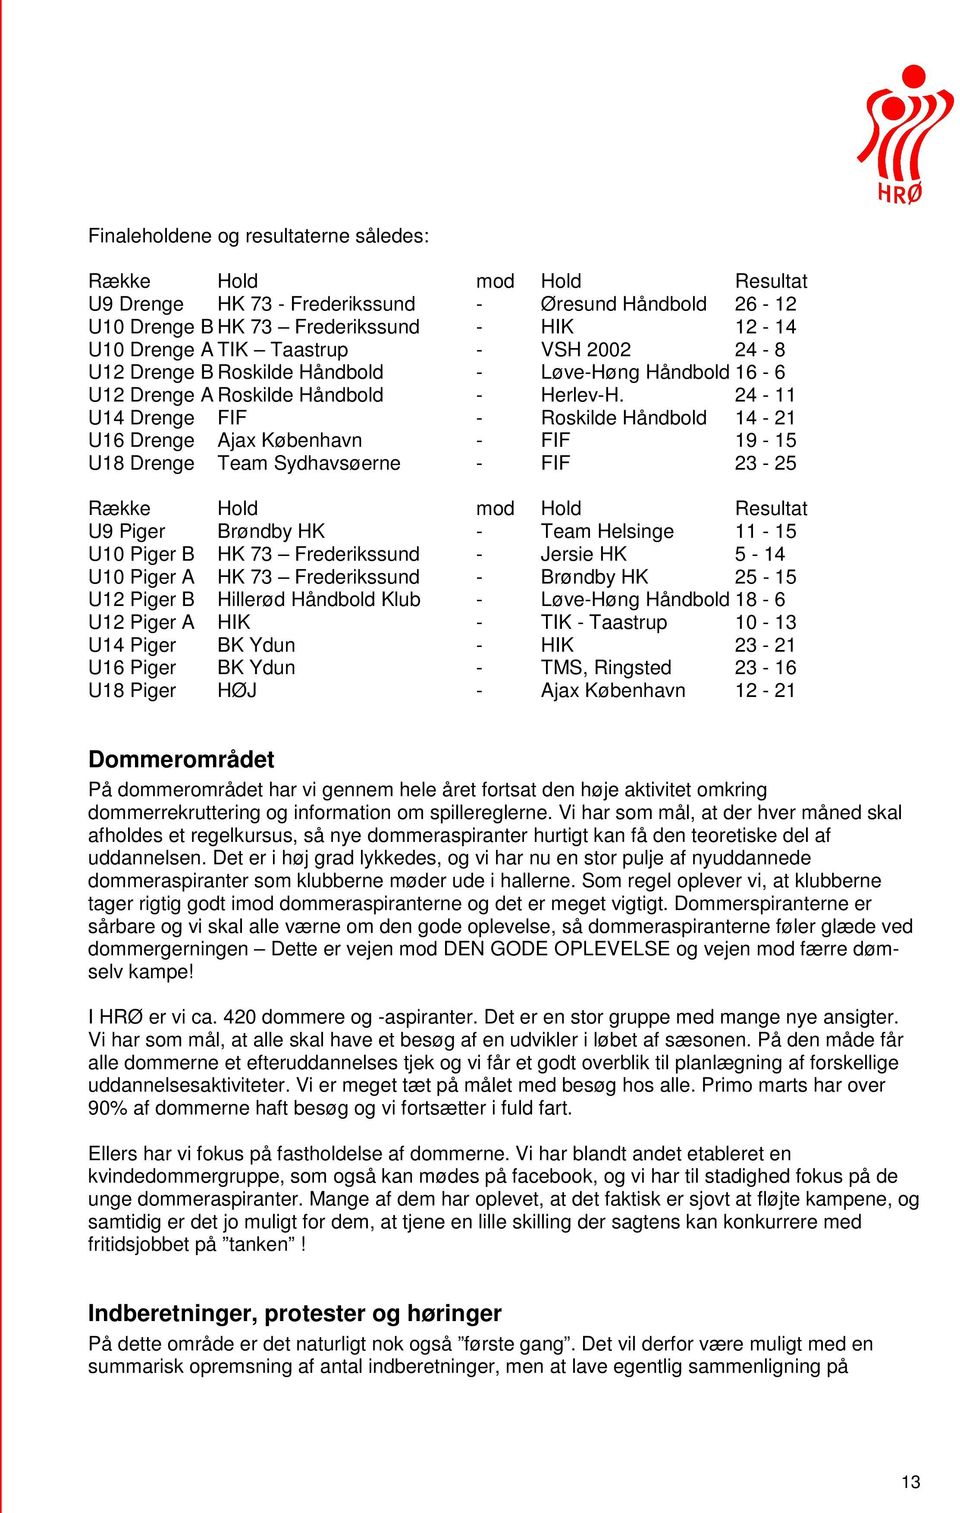 24-11 U14 Drenge FIF - Roskilde Håndbold 14-21 U16 Drenge Ajax København - FIF 19-15 U18 Drenge Team Sydhavsøerne - FIF 23-25 Række Hold mod Hold Resultat U9 Piger Brøndby HK - Team Helsinge 11-15